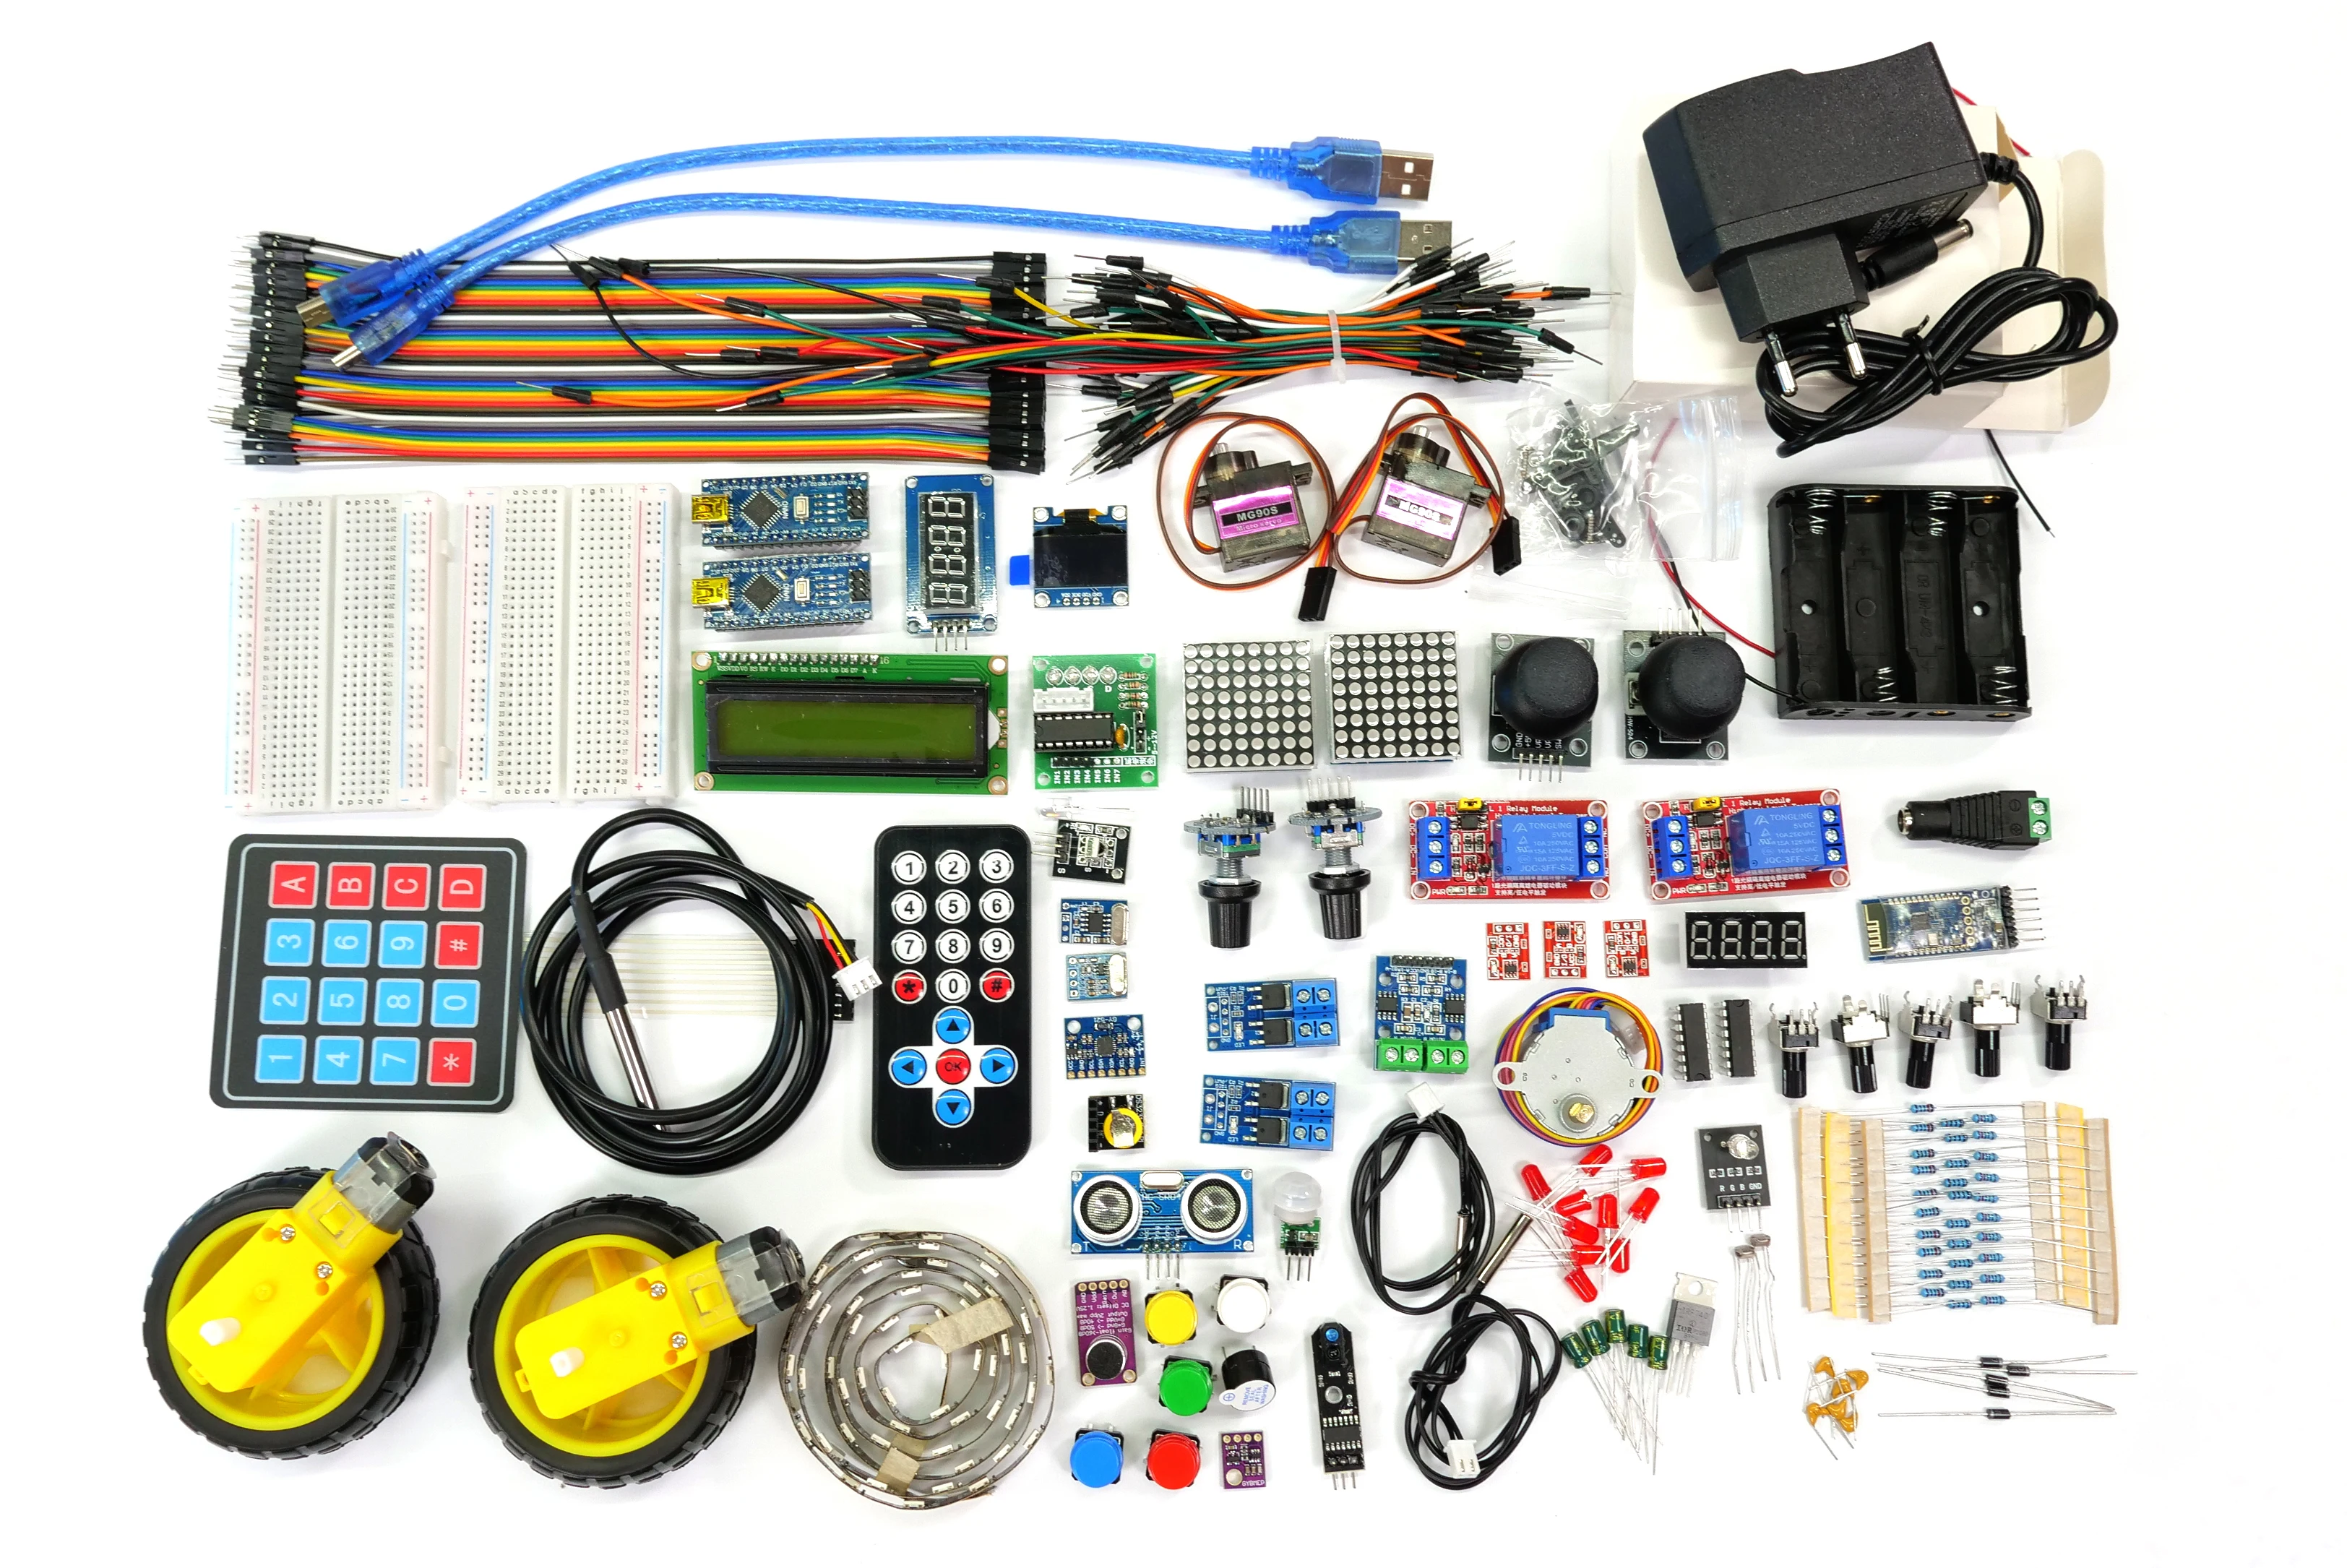 Arduino tools